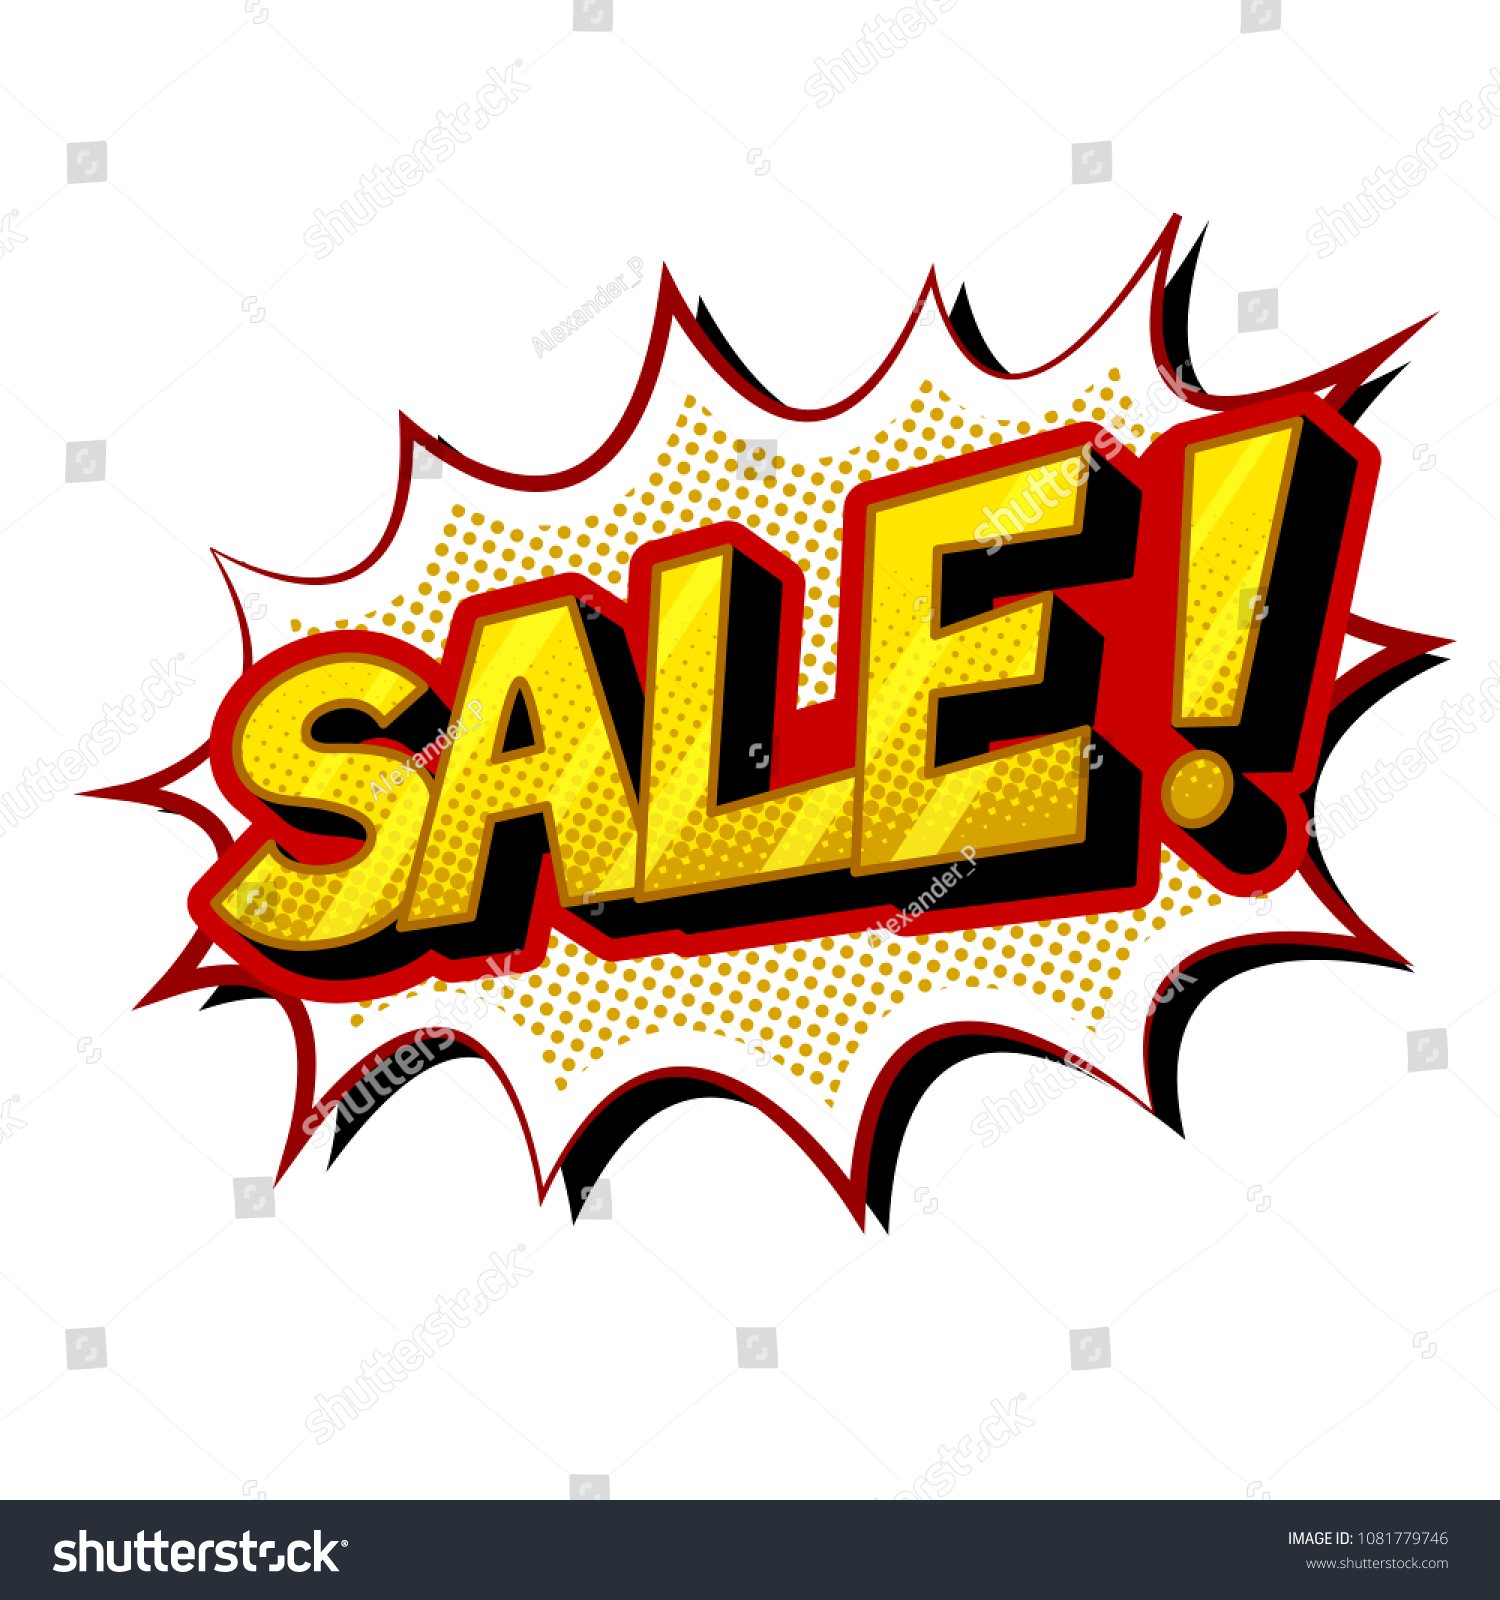 Sale Word Pop Art Retro Raster Stock Illustration 1081779746 Shutterstock